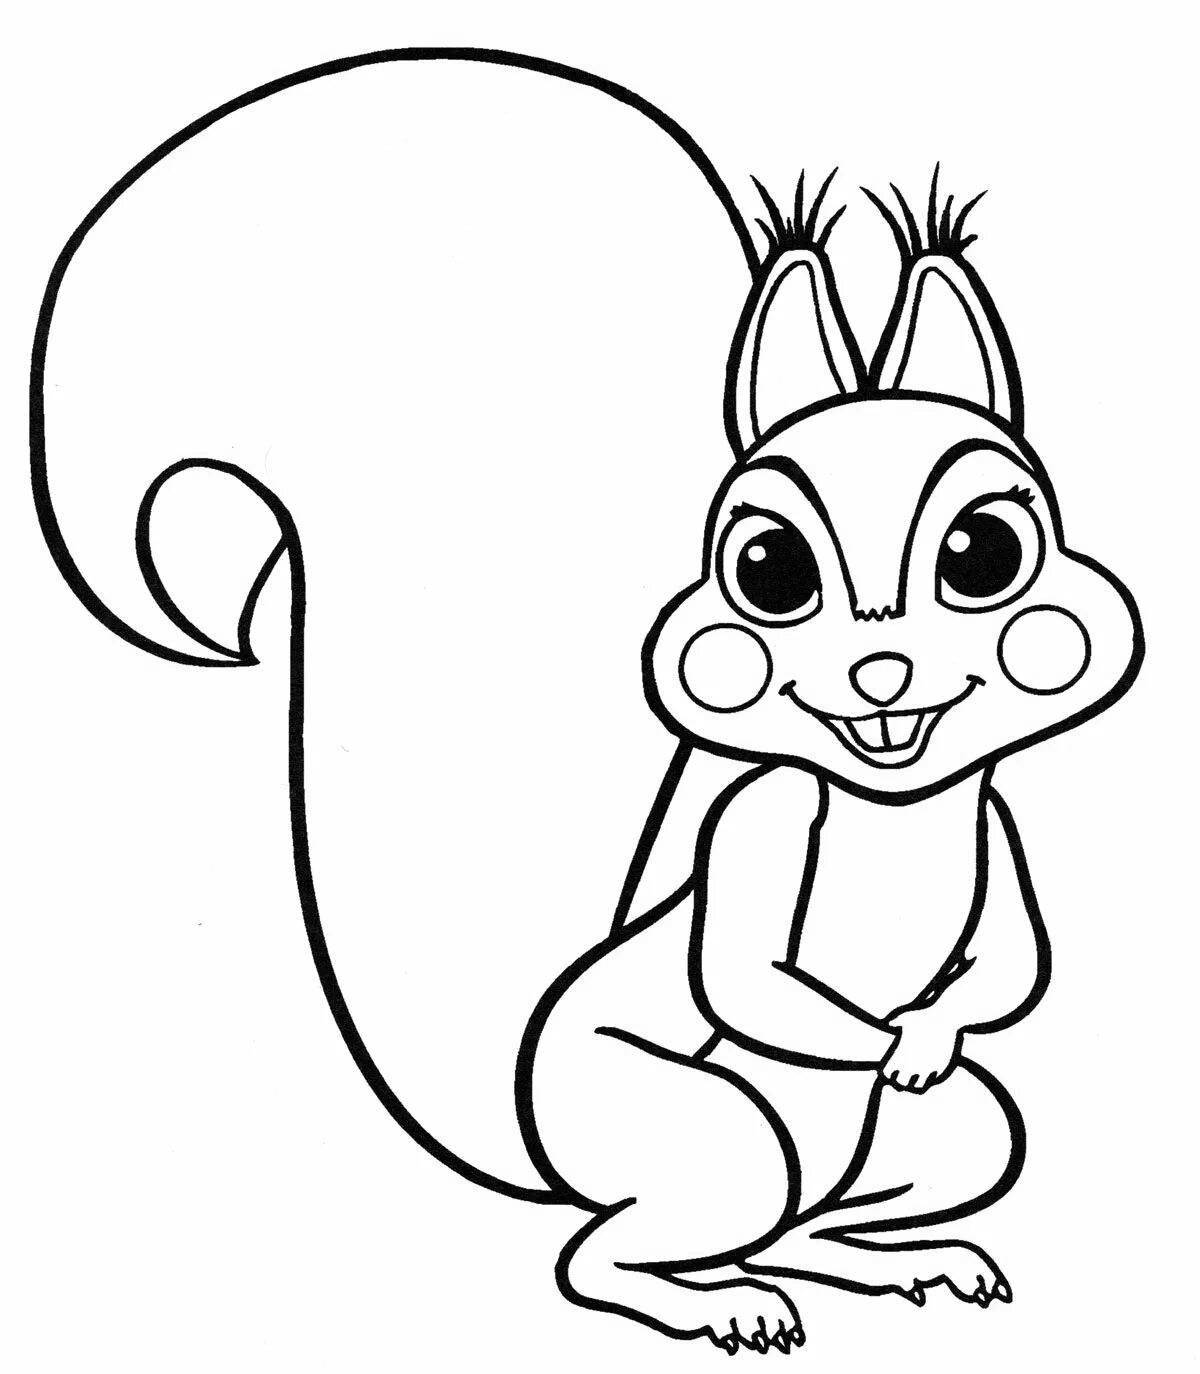 Happy squirrel coloring